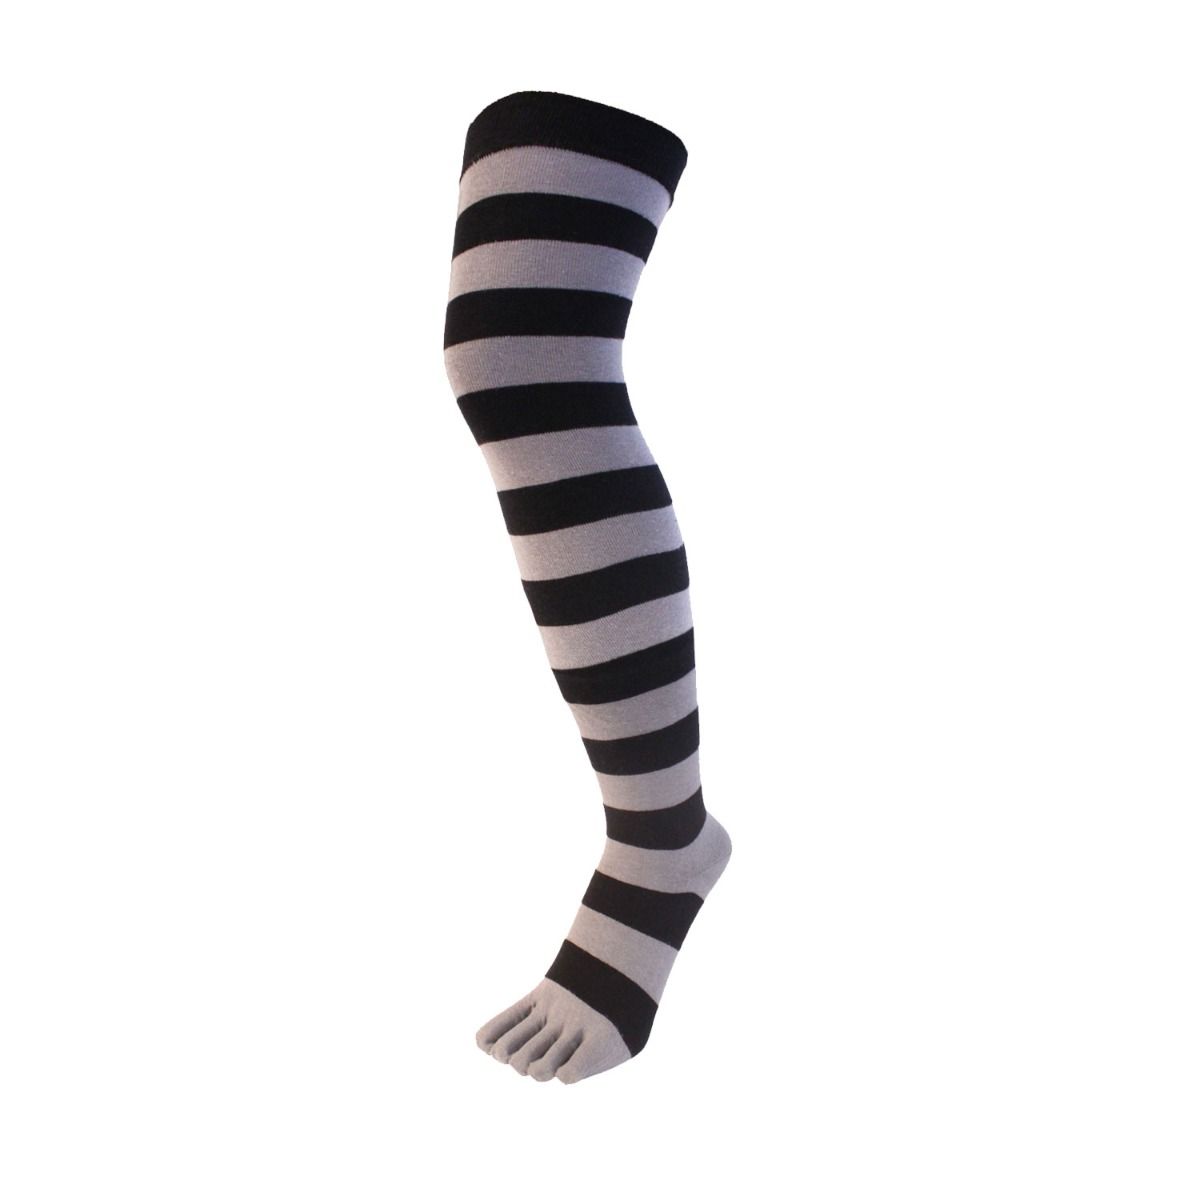 TOETOE Adult Toe Socks - Essential Over-Knee